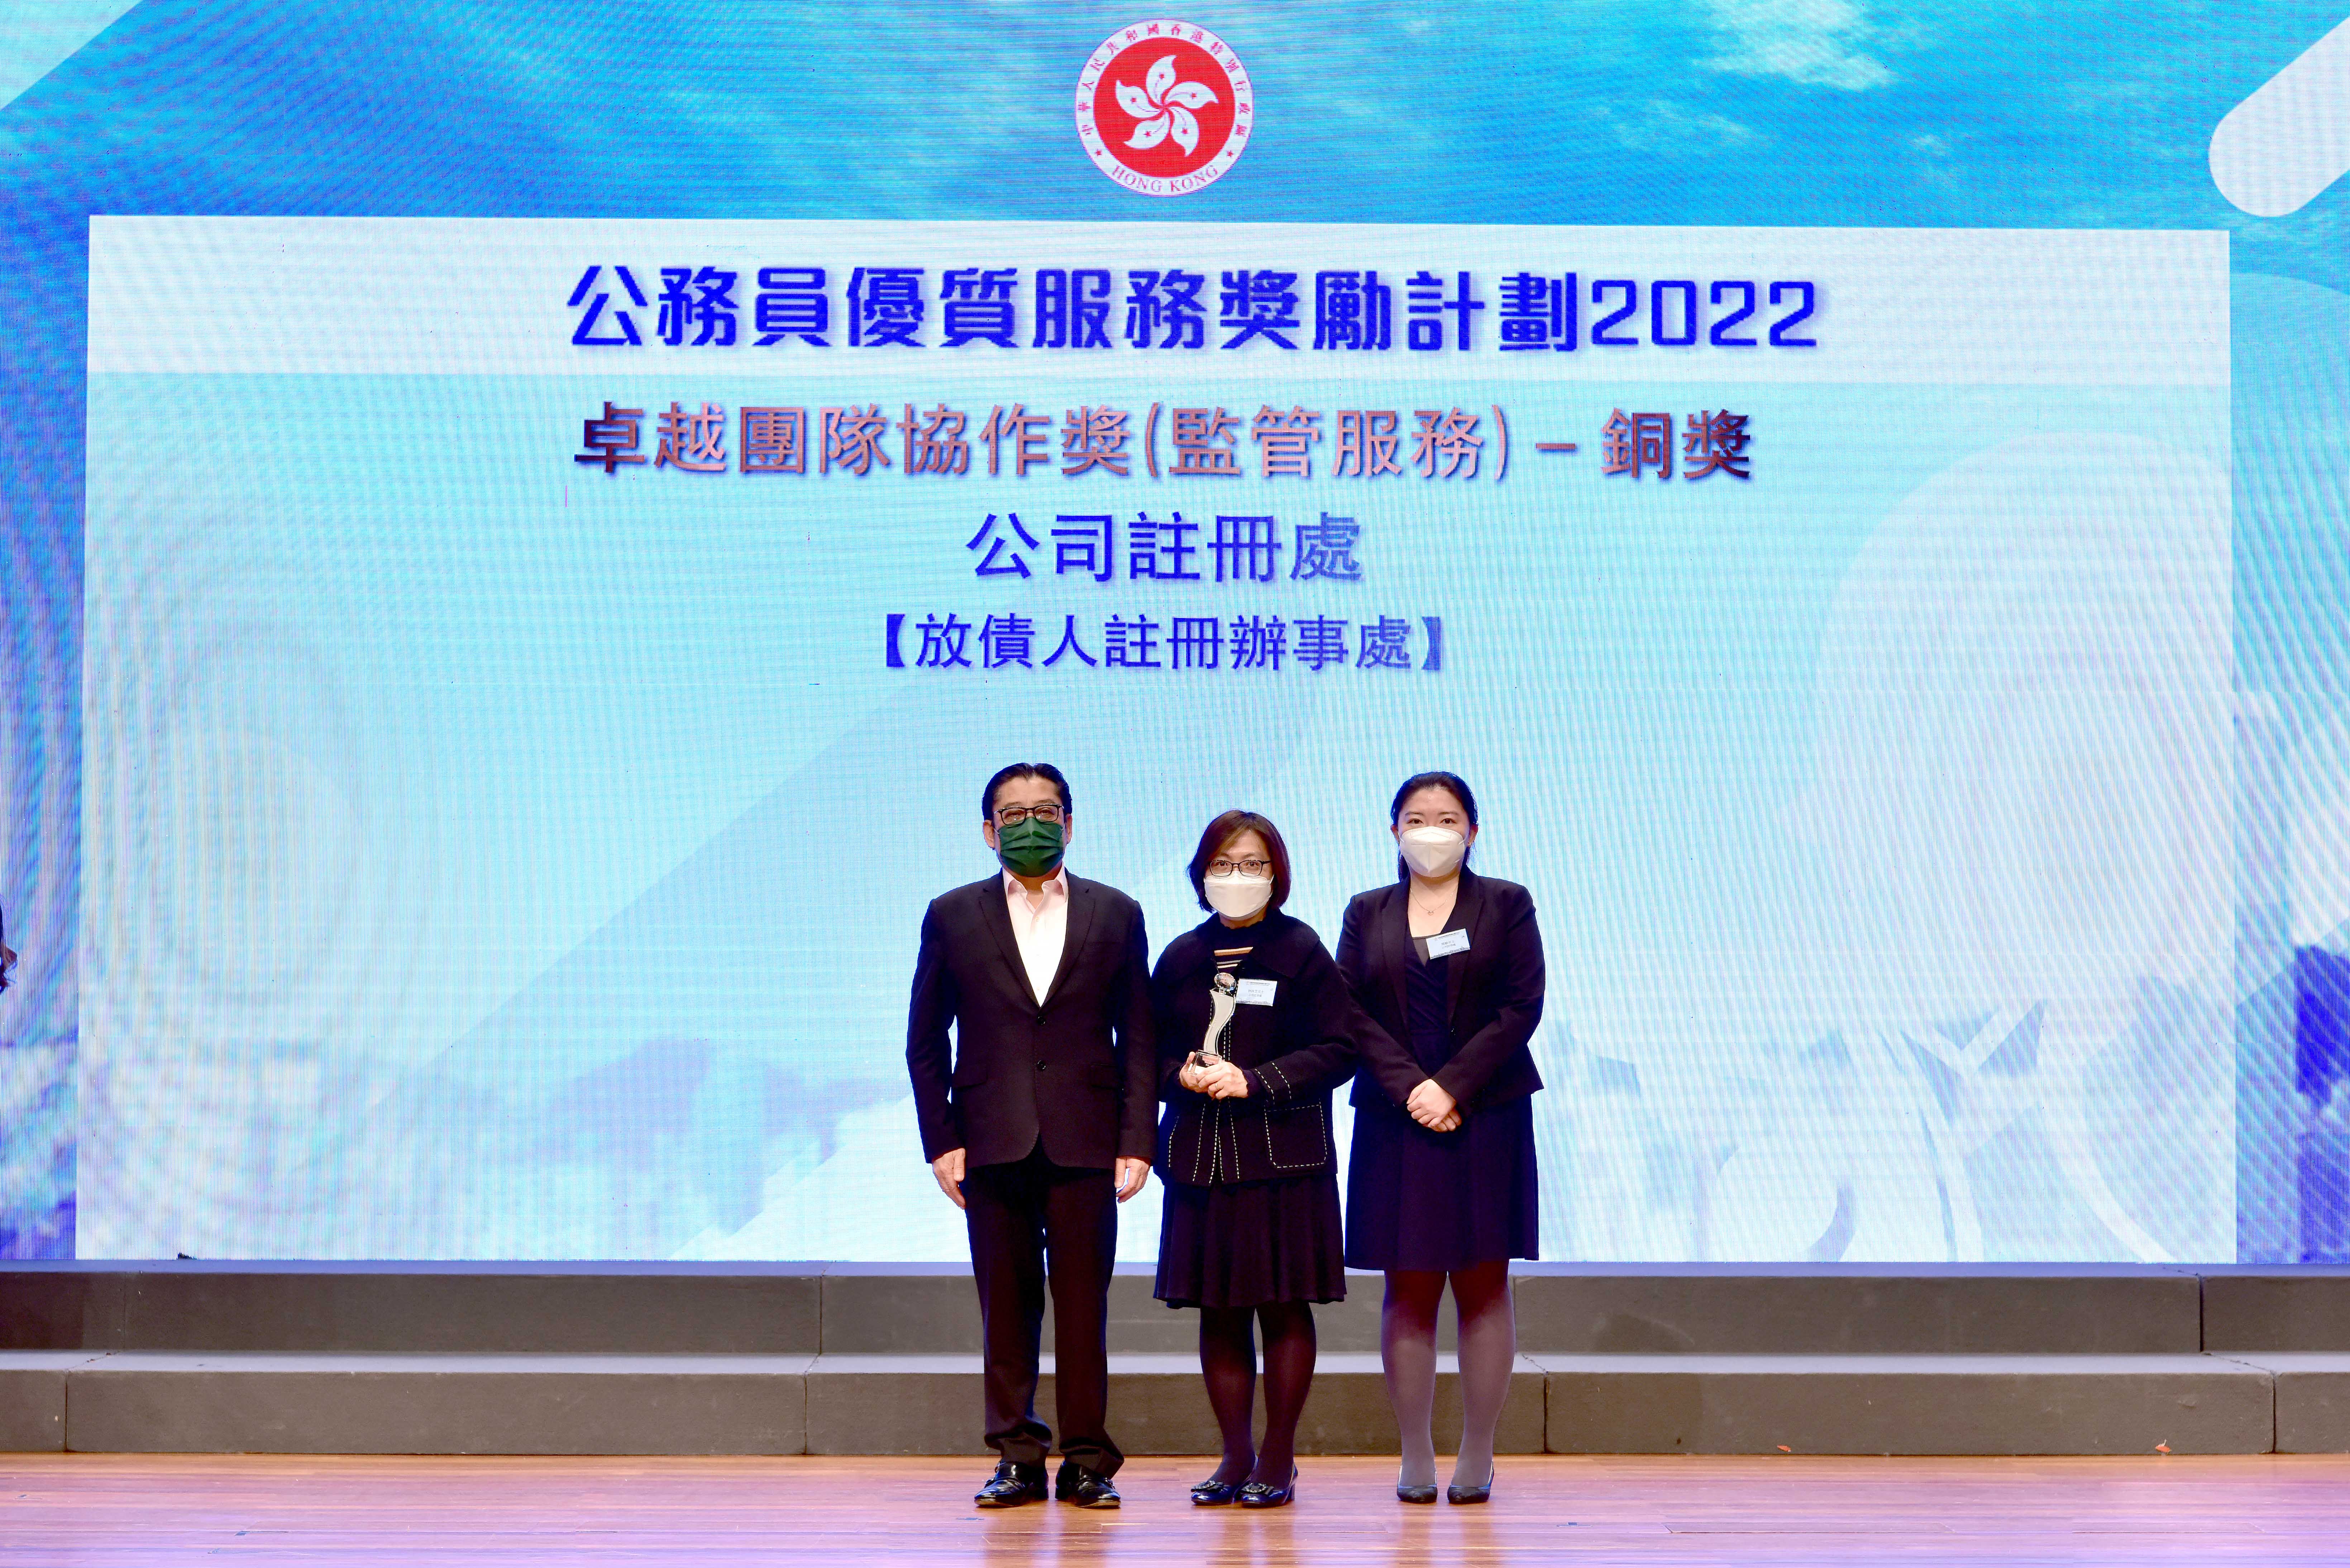 副公司注册处经理林咏芝女士（中）由助理公司注册处经理周敏女士（右）陪同下，在颁奖典礼上接受「卓越团队协作奖」（监管服务）的铜奖。